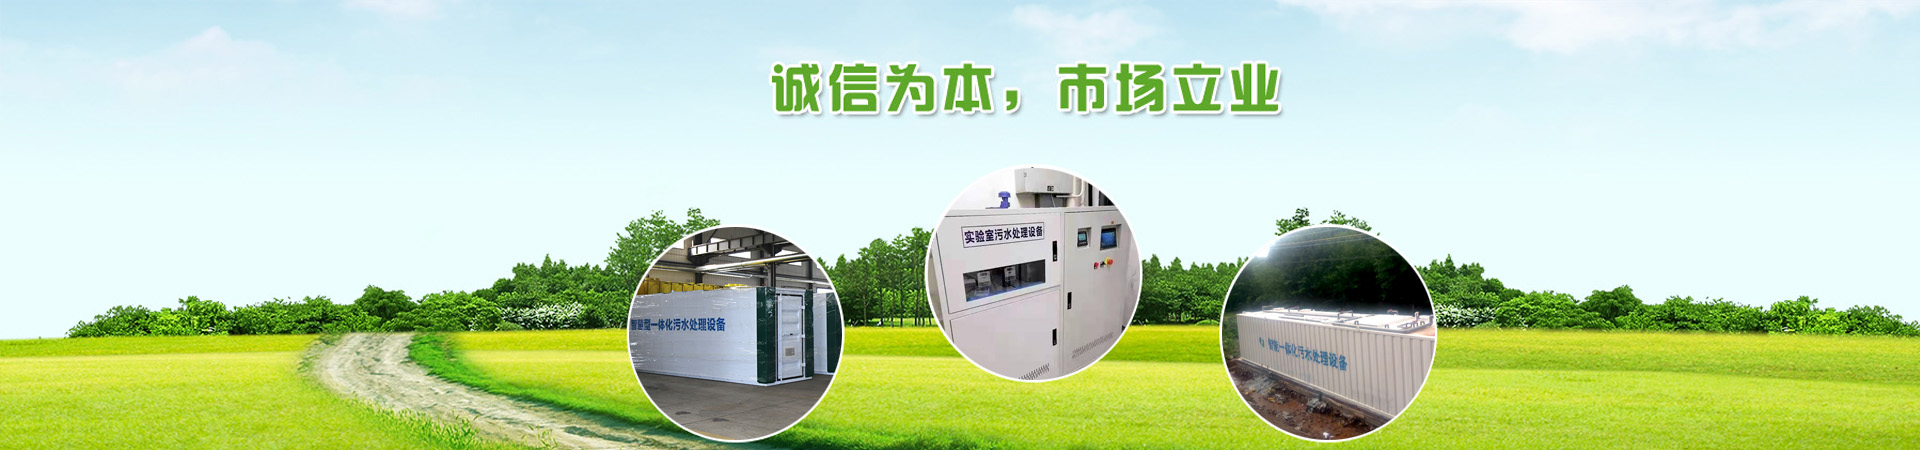 实验室污水处理设备、济南本地实验室污水处理设备、济南、济南实验室污水处理设备